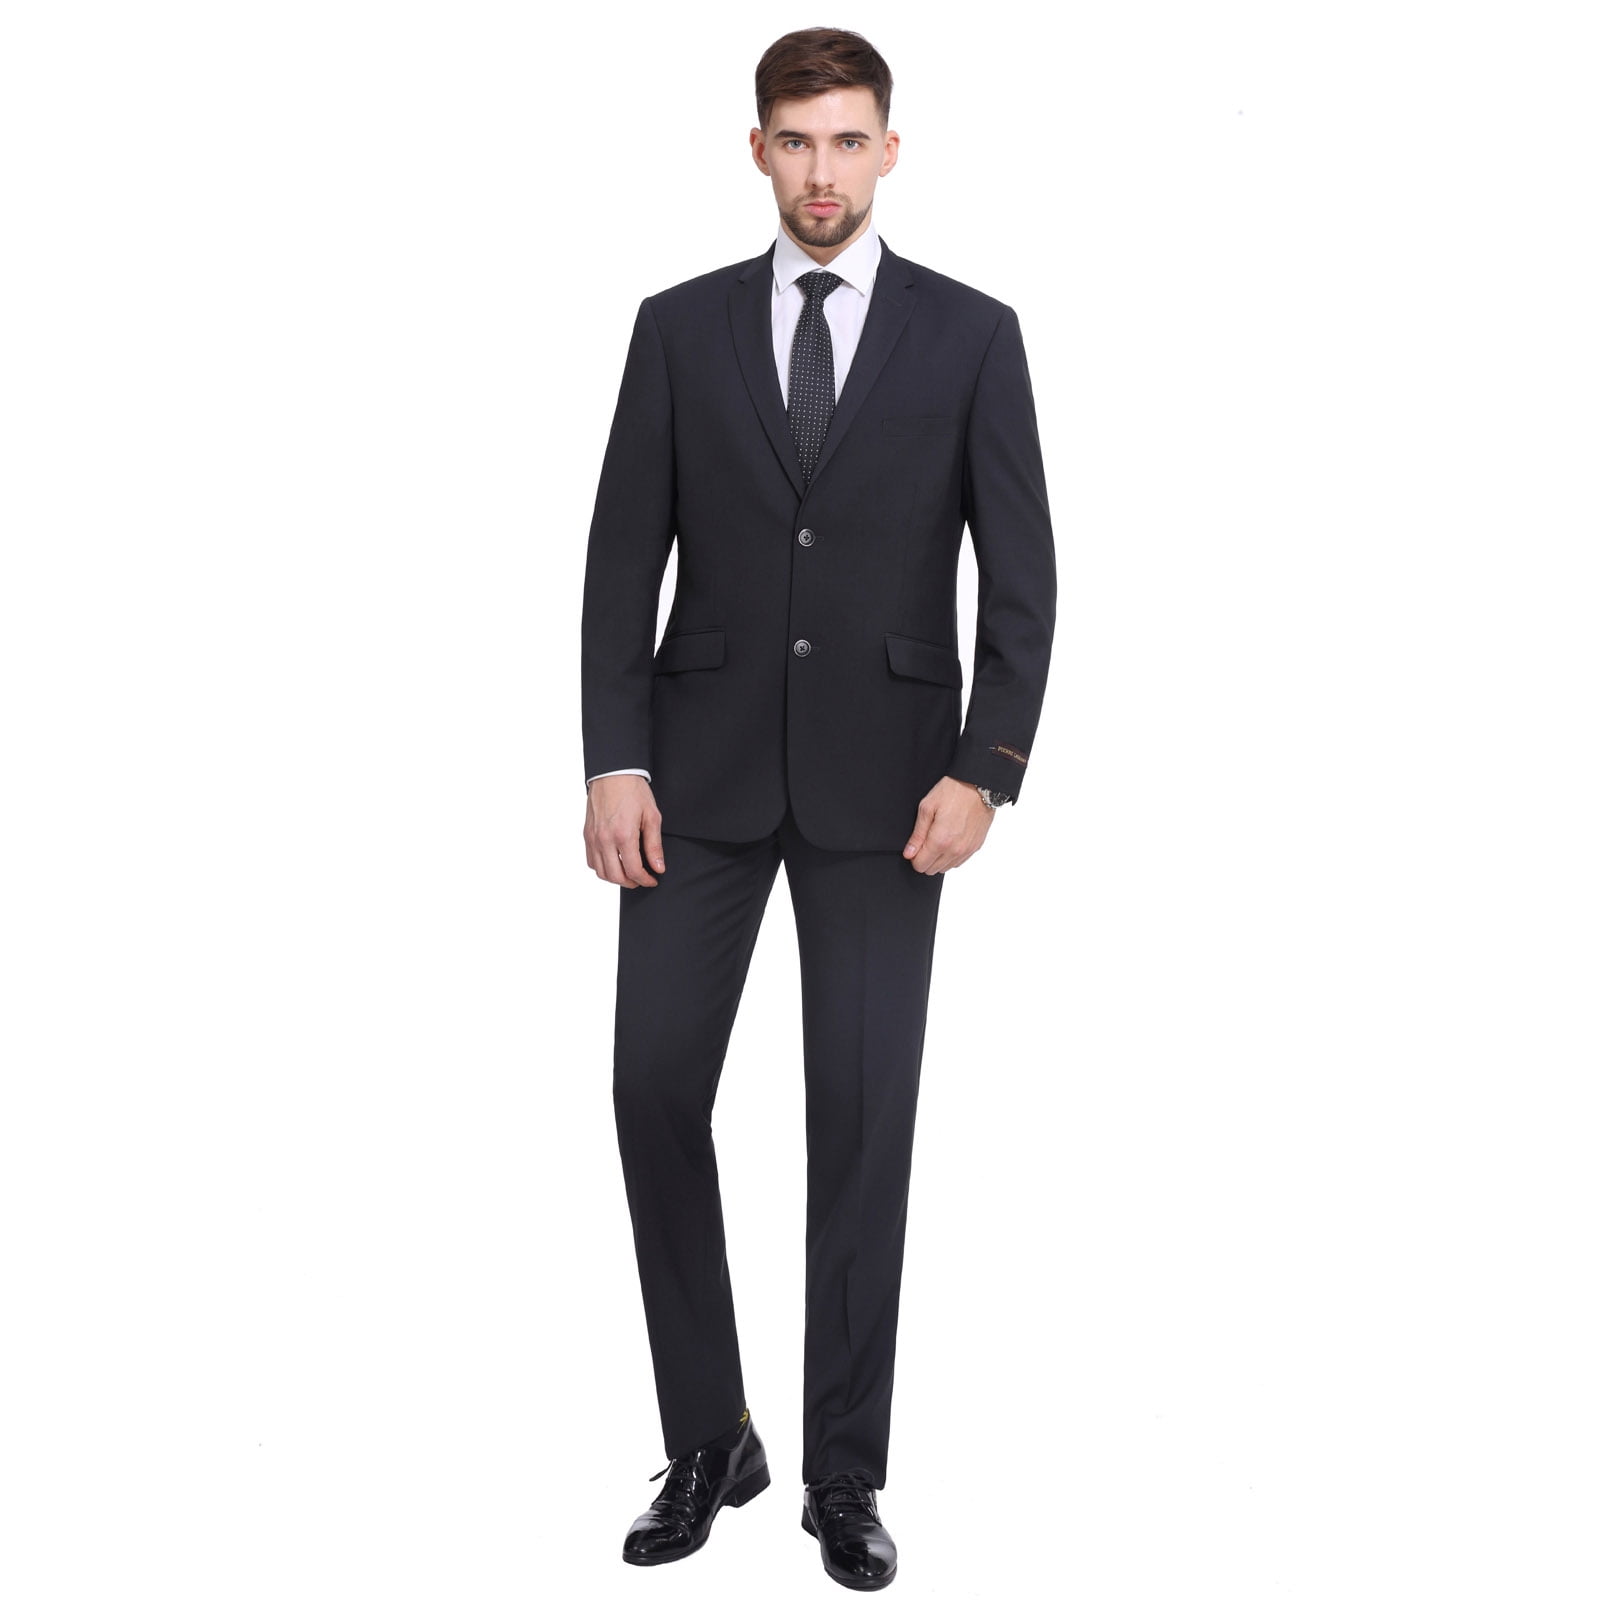 P&L Men's Slim Fit Suit 2 Piece Business Wedding Prom Tux Blazer ...